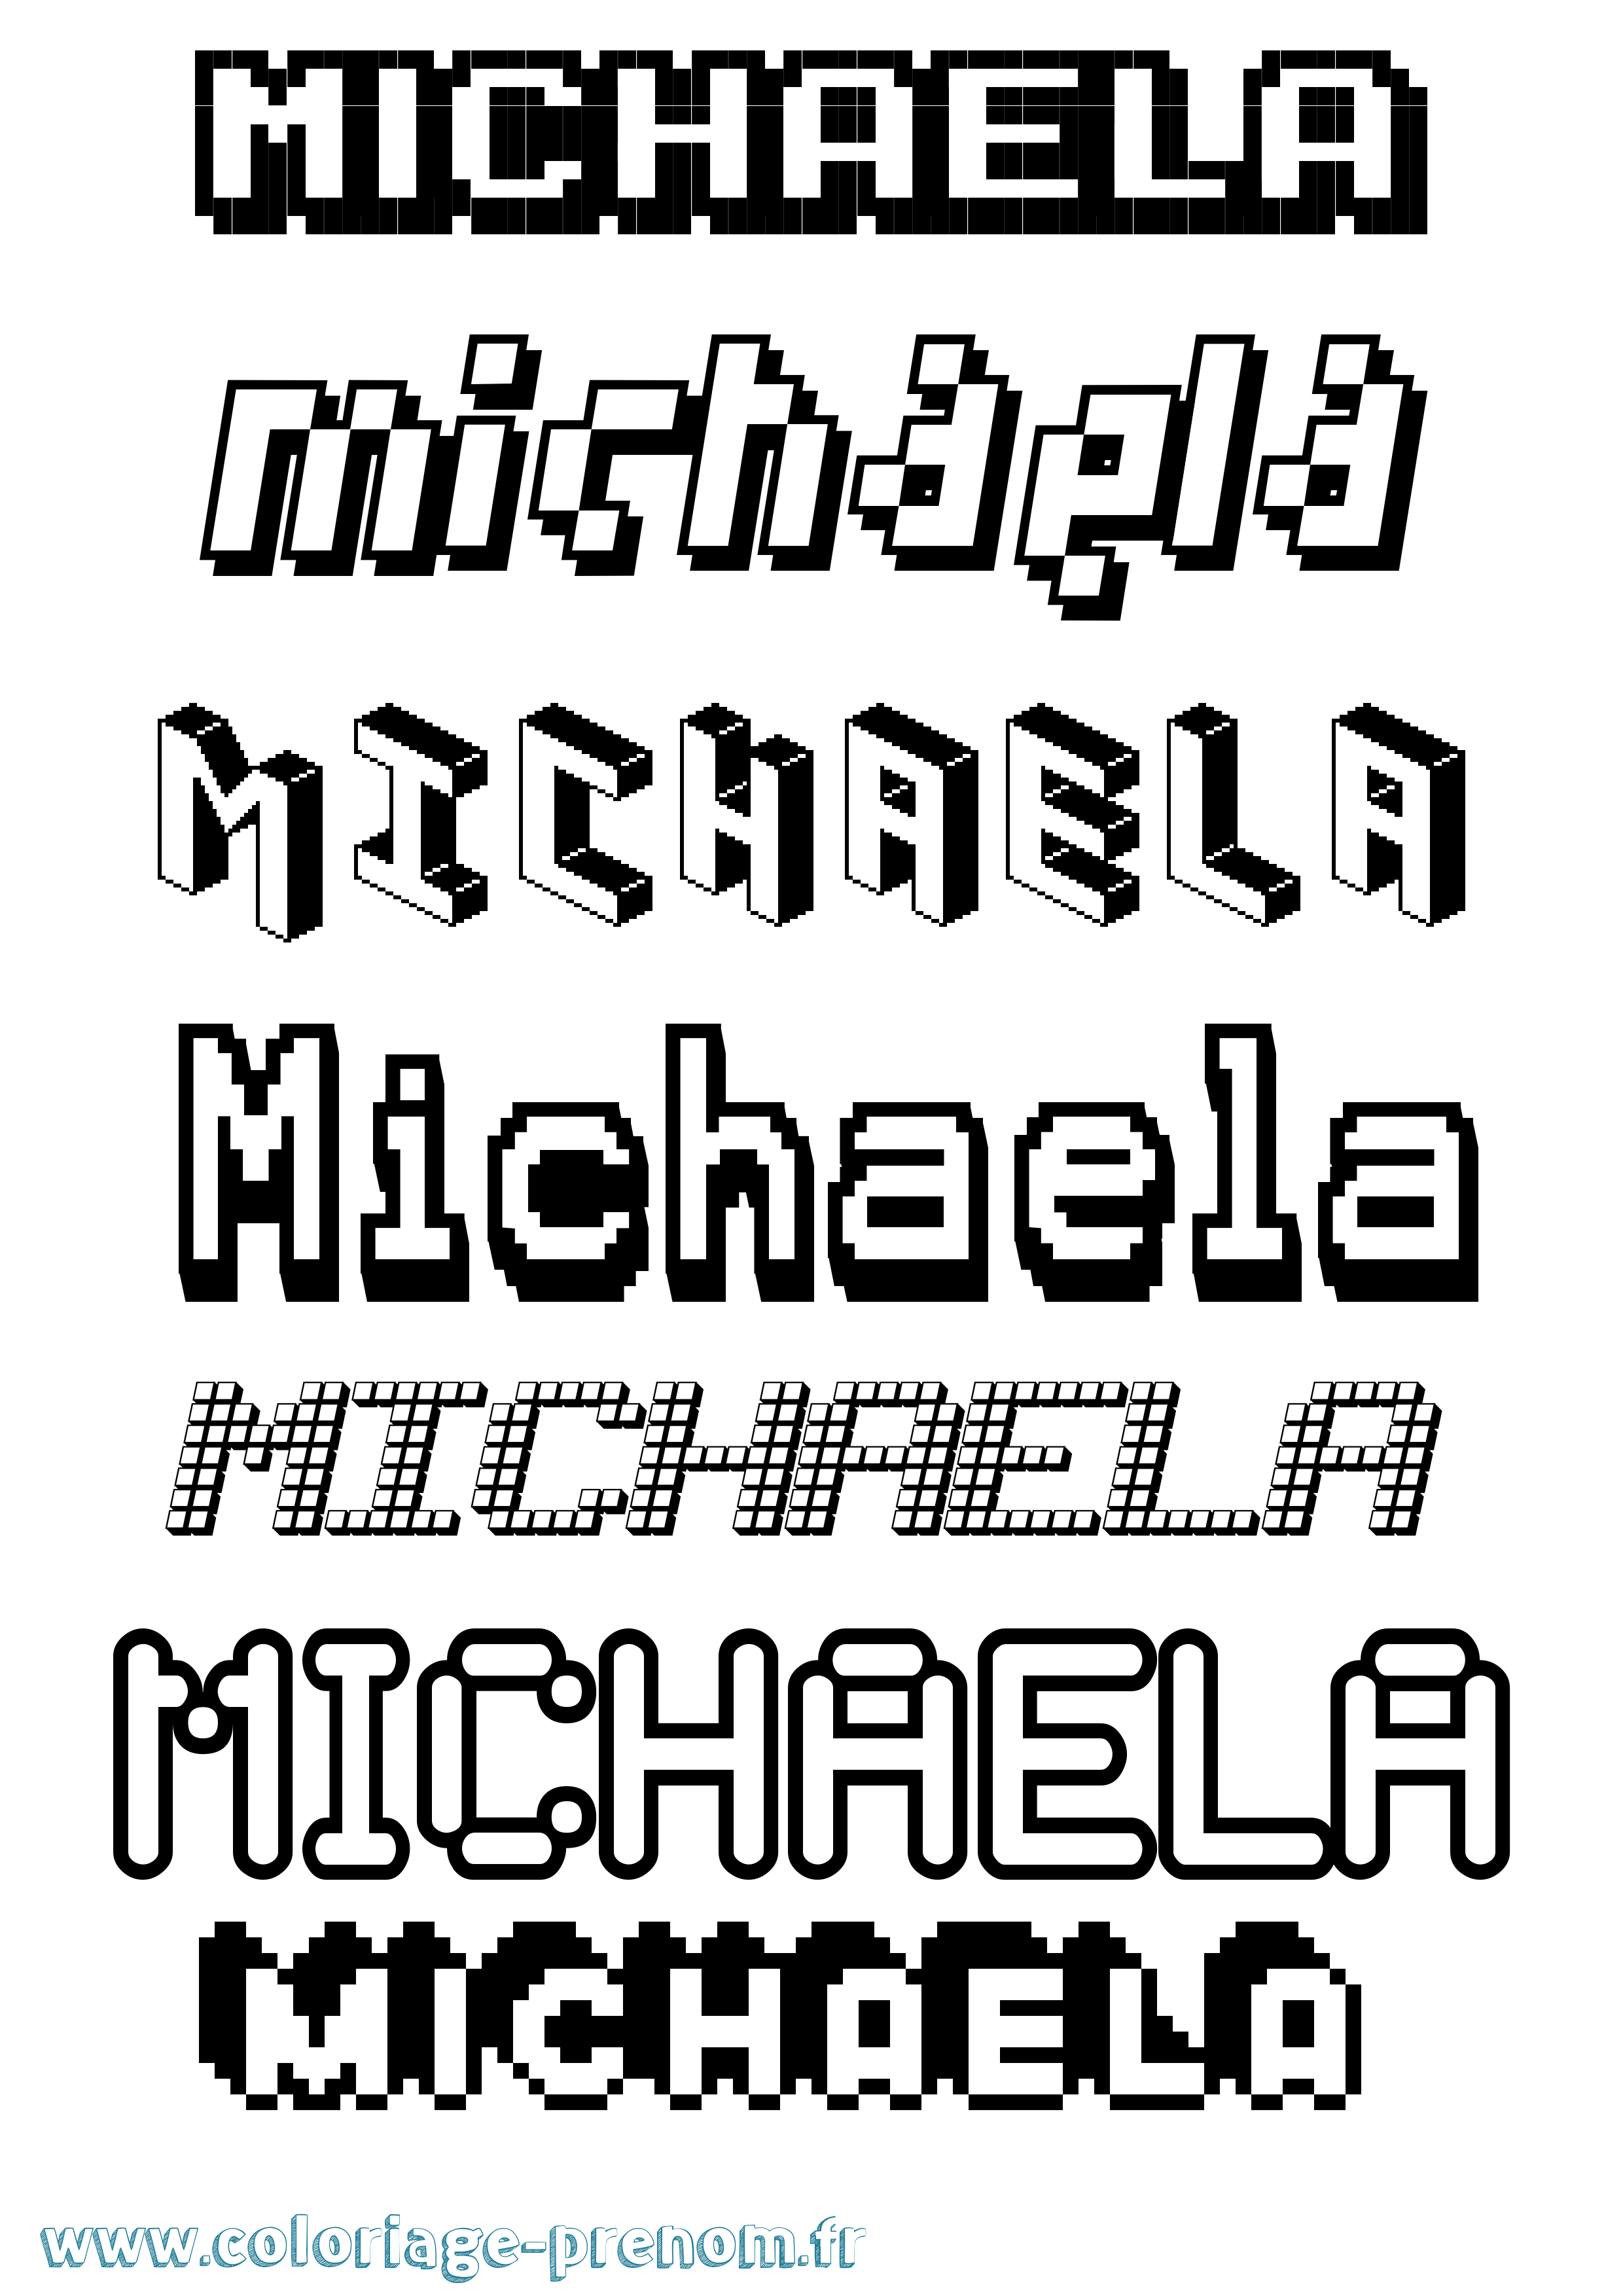 Coloriage prénom Michaela Pixel